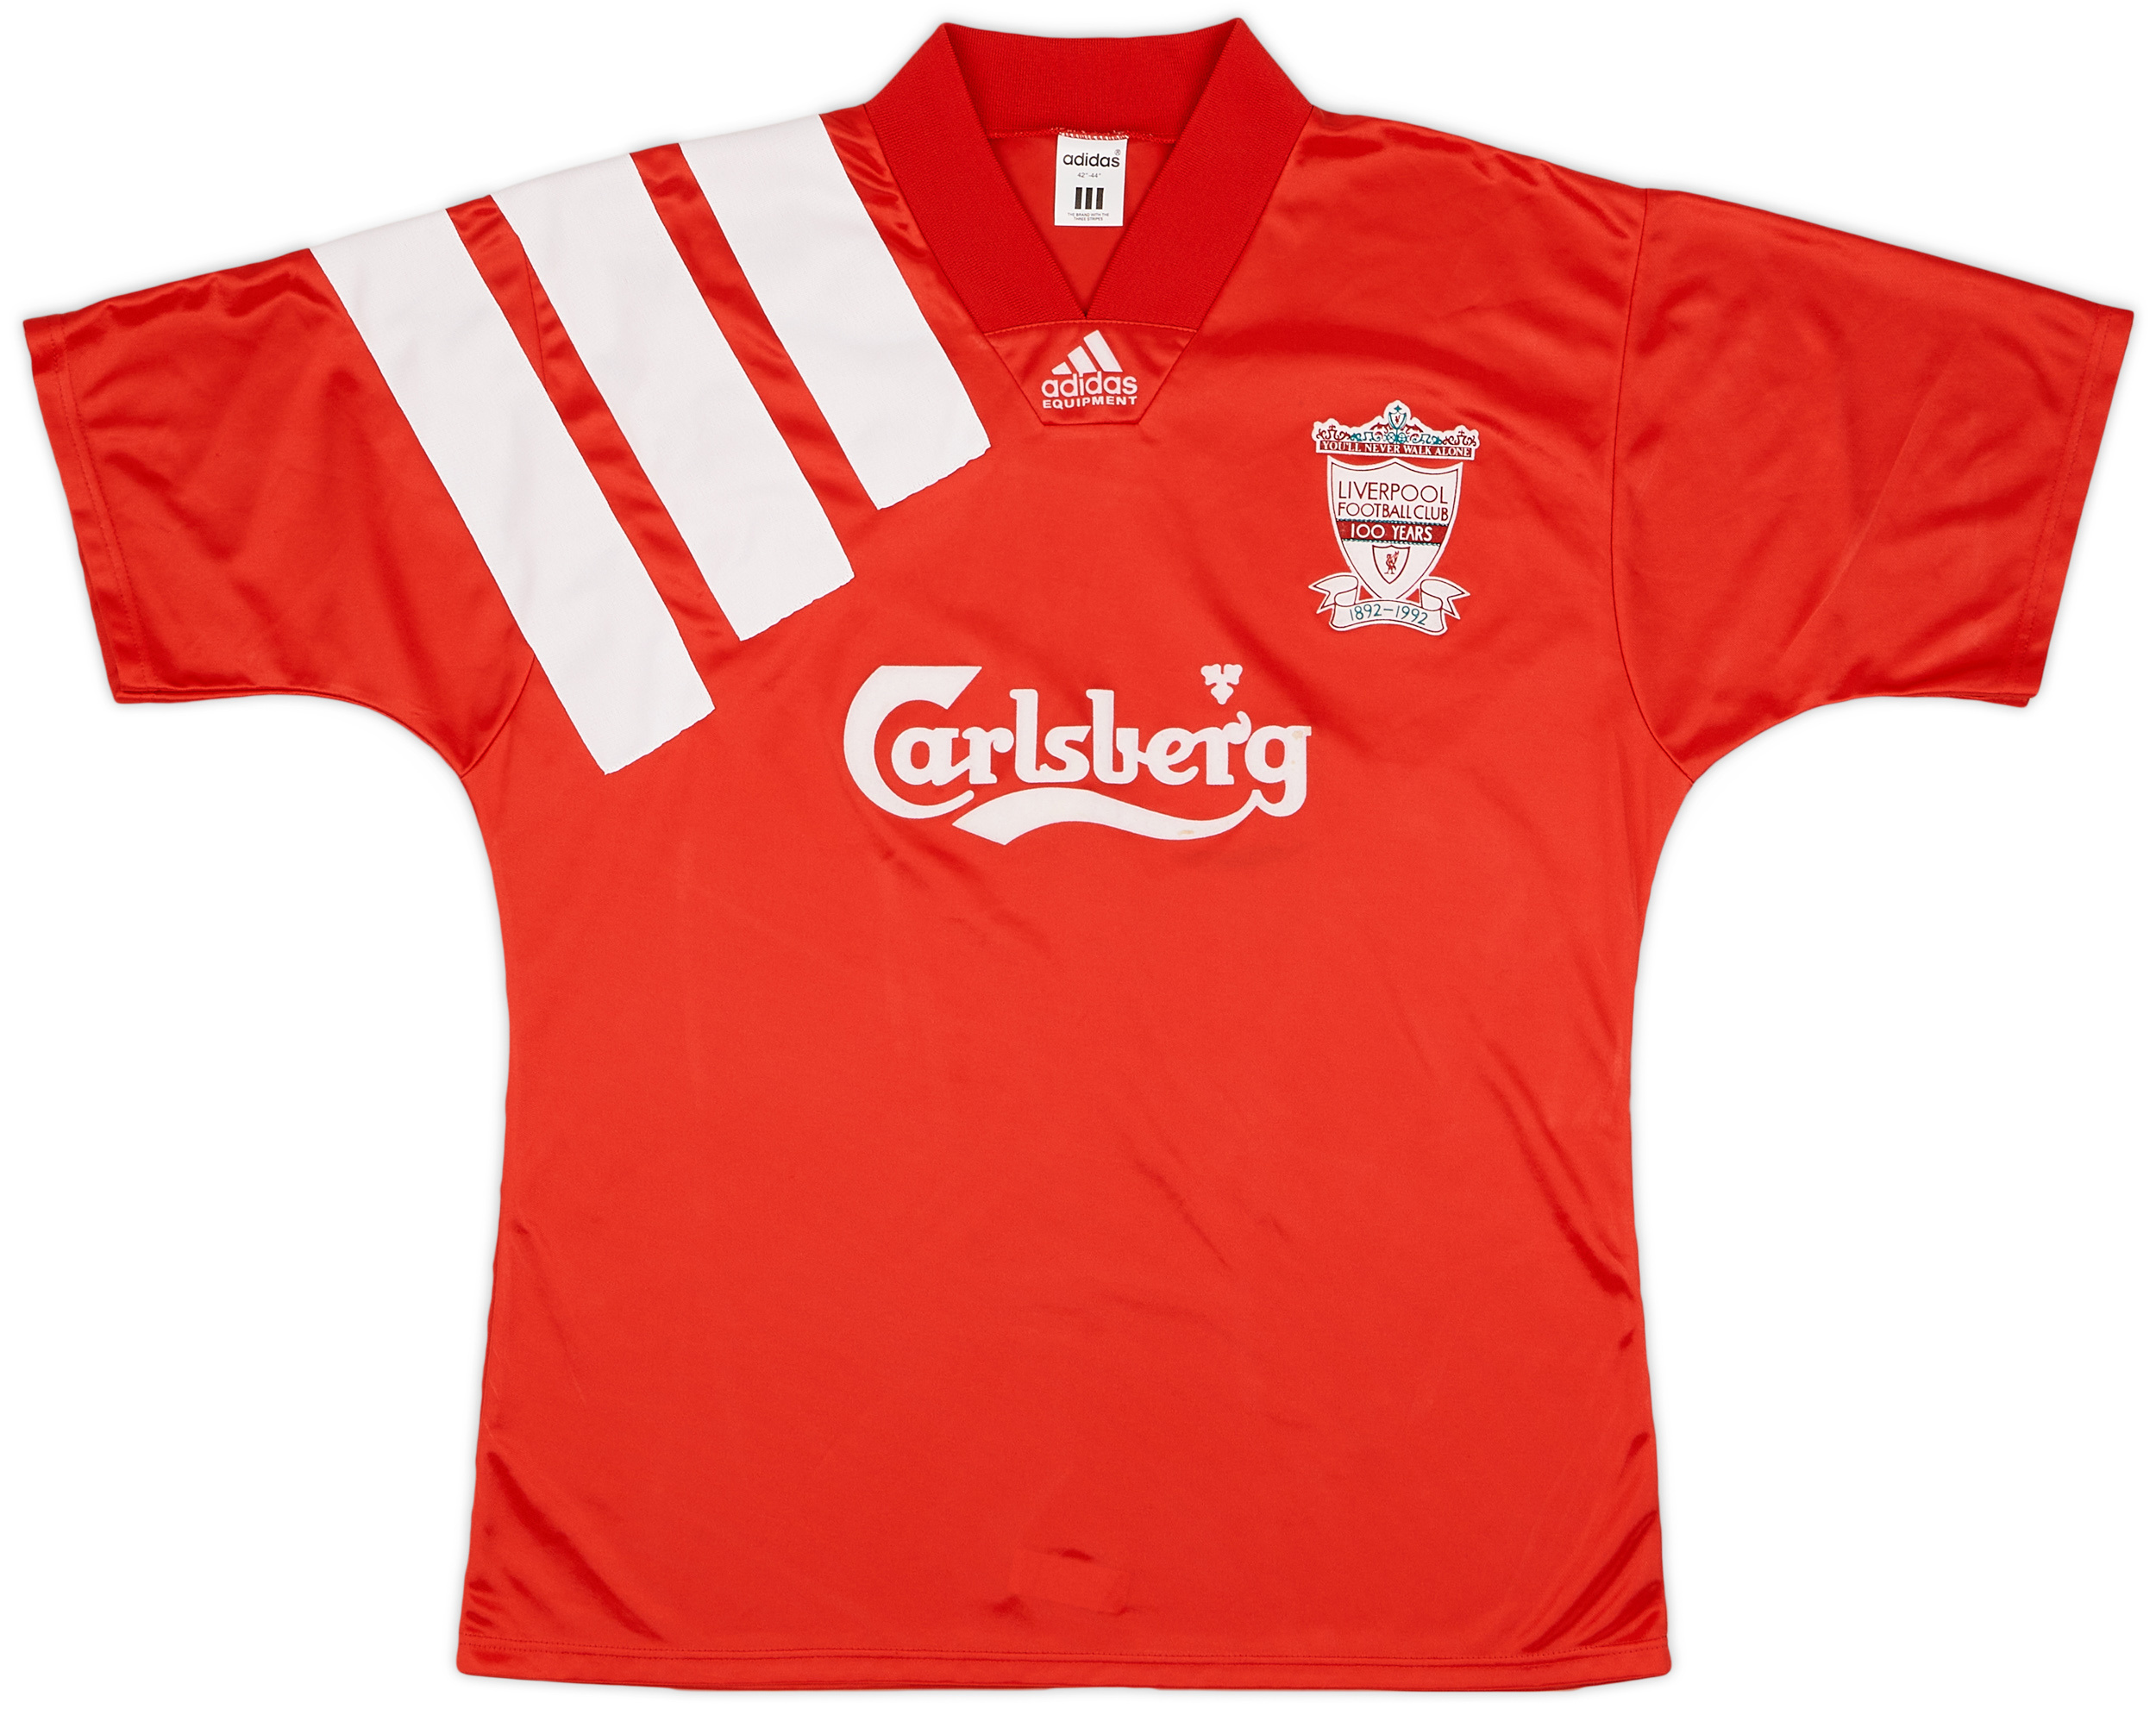 1992-93 Liverpool Centenary Home Shirt - 6/10 - ()